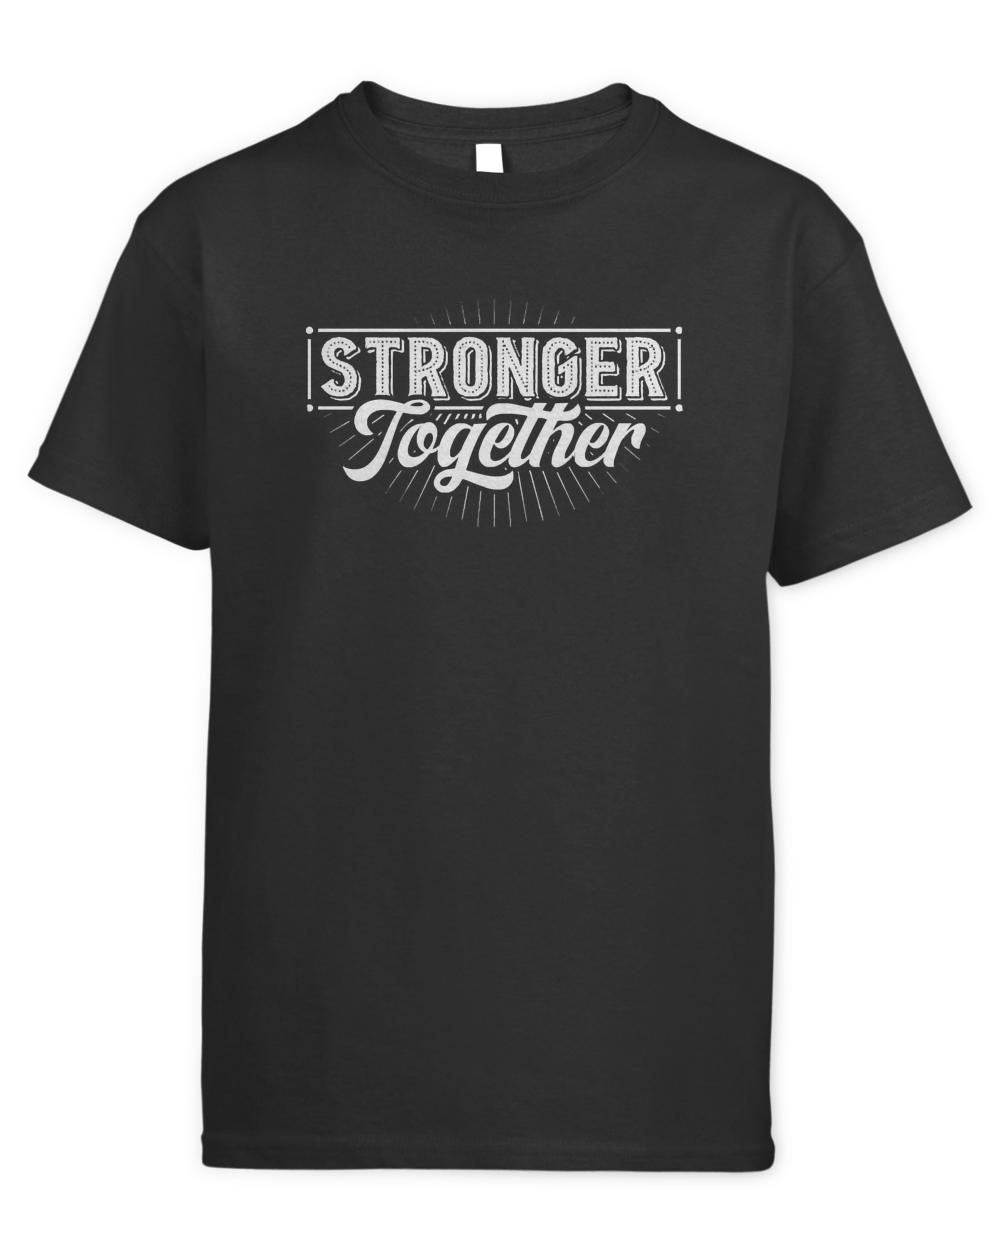 Union T- Shirt Pro Union Strong Labor Union Worker Union T- Shirt (2)